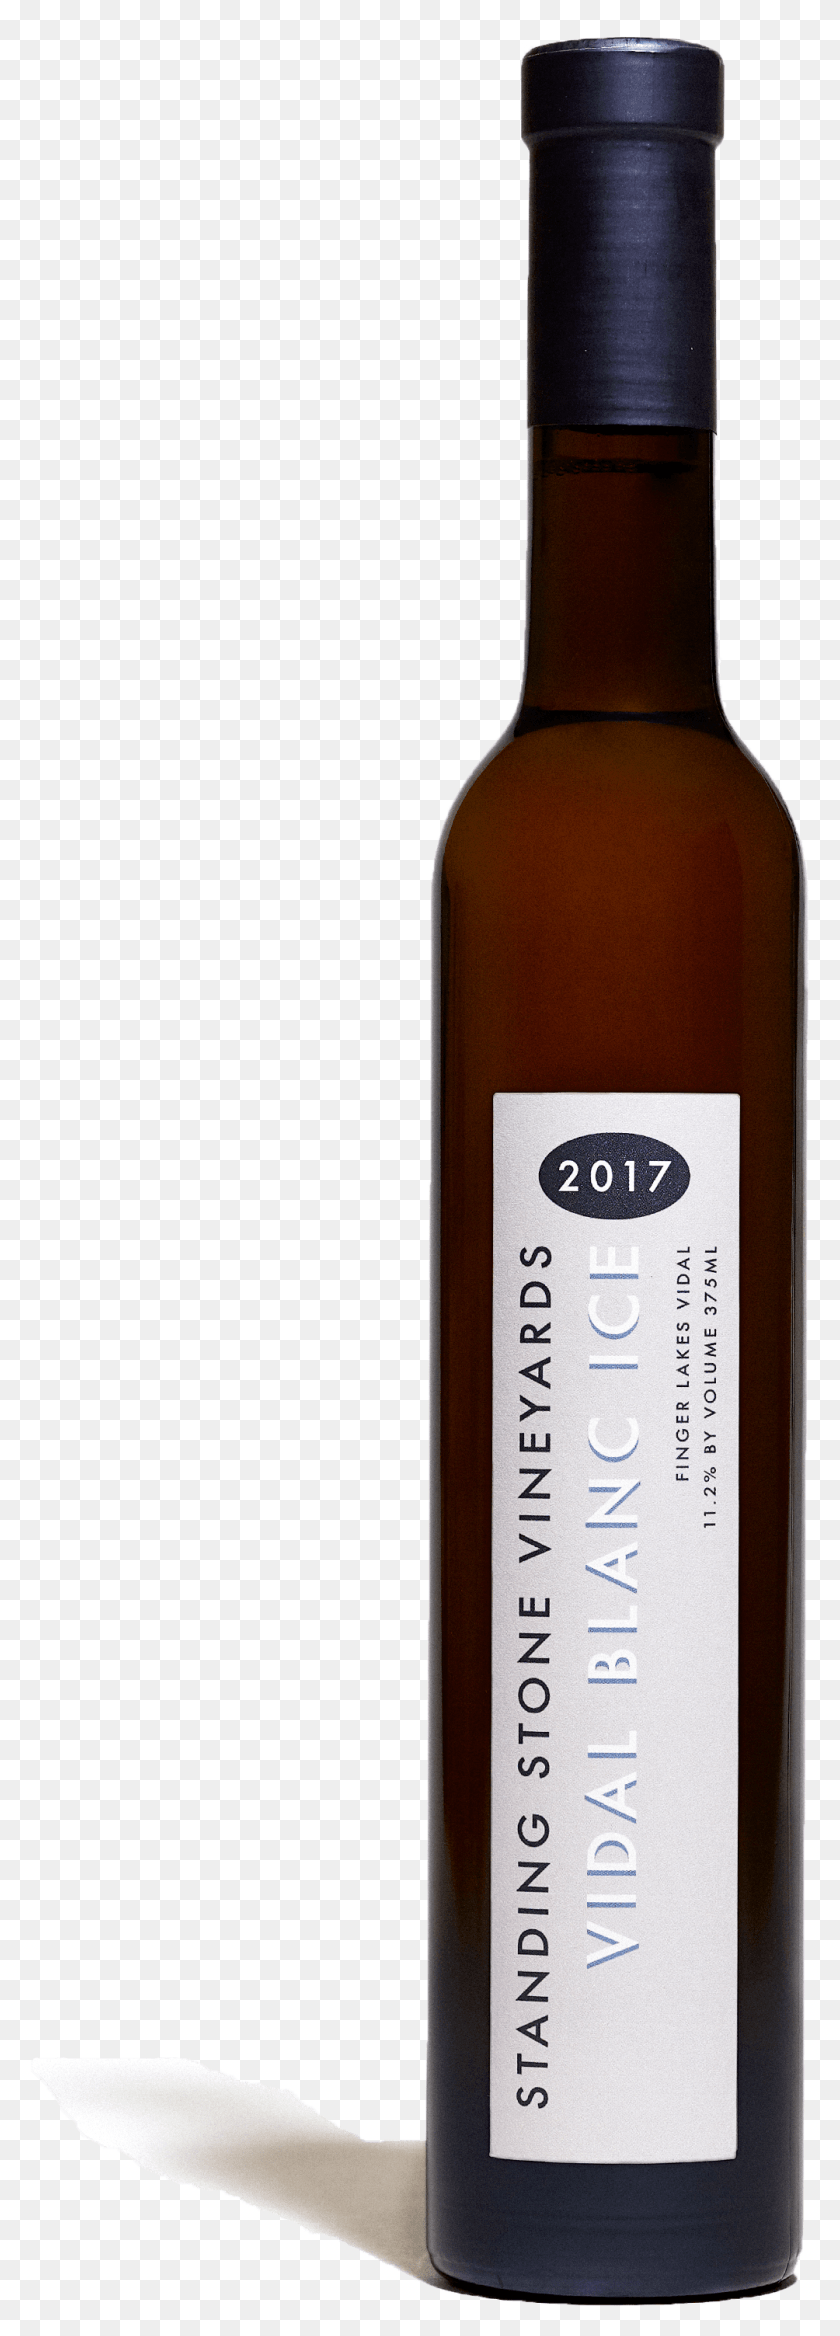 1004x2930 Vidal Blanc Ice 2017 Bottle Shot Wine Bottle, Alcohol, Beverage, Drink HD PNG Download